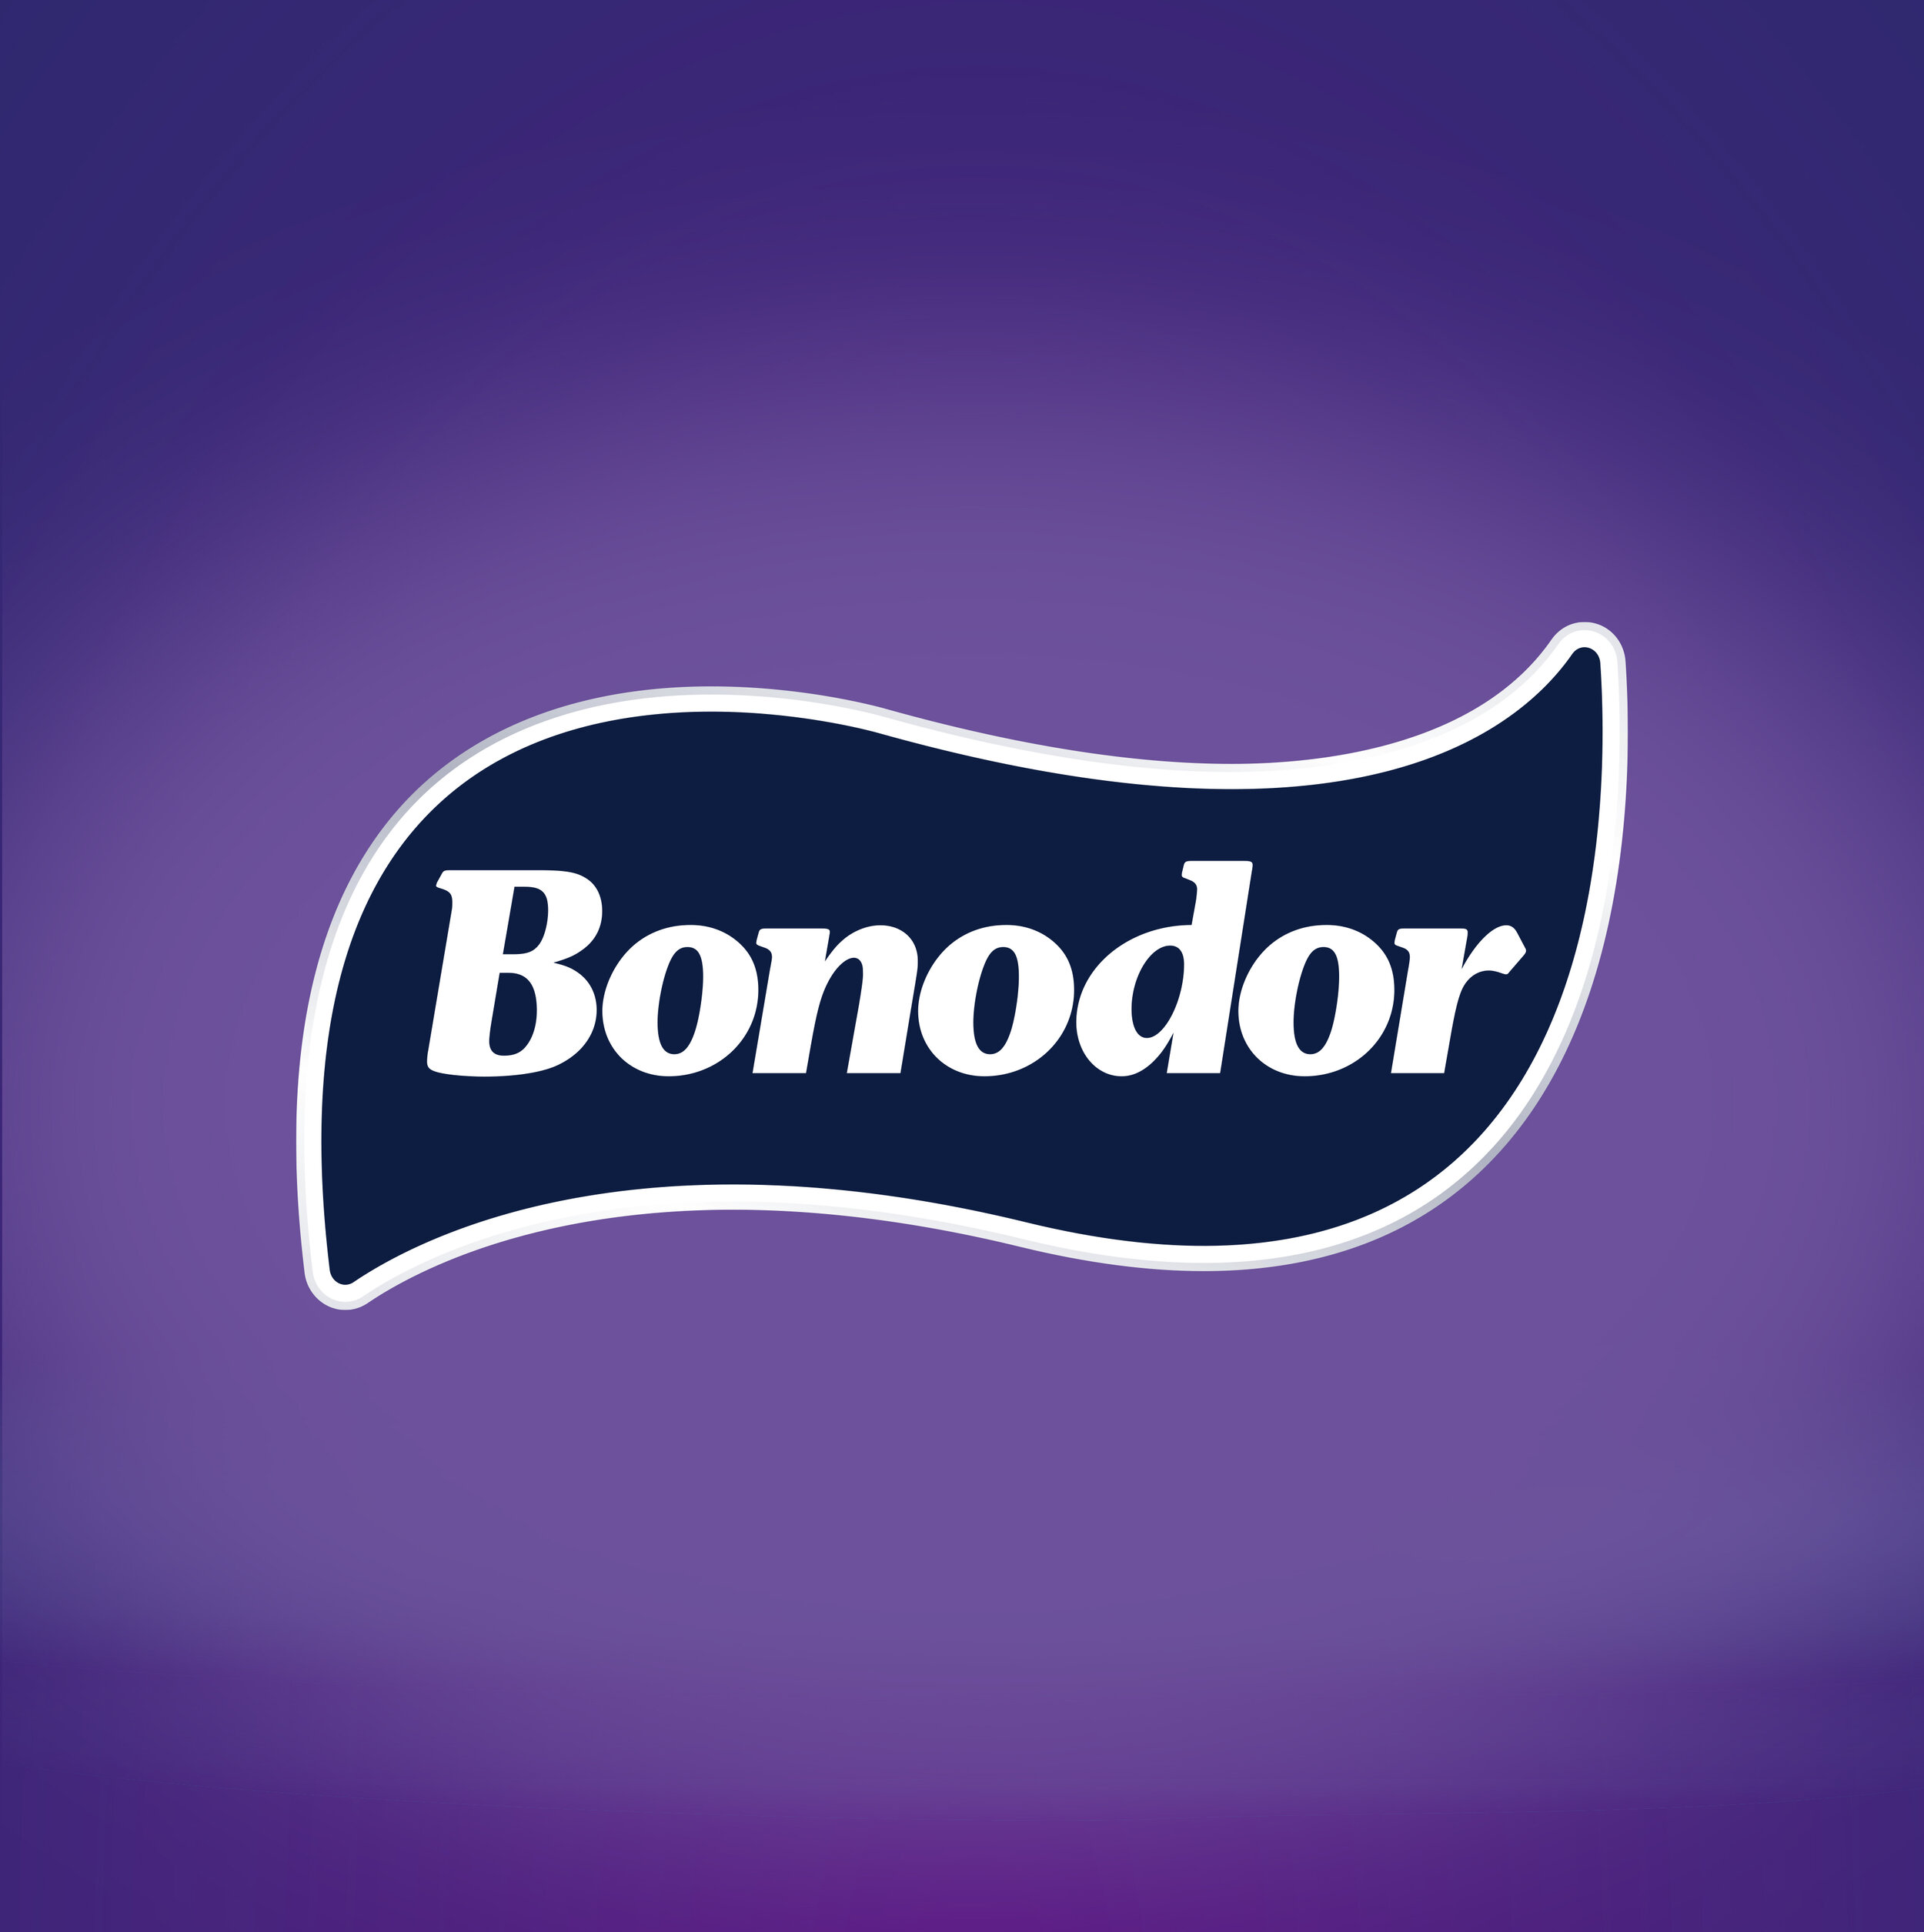 Packaging-Bonodor-Century-Brands_01.jpg